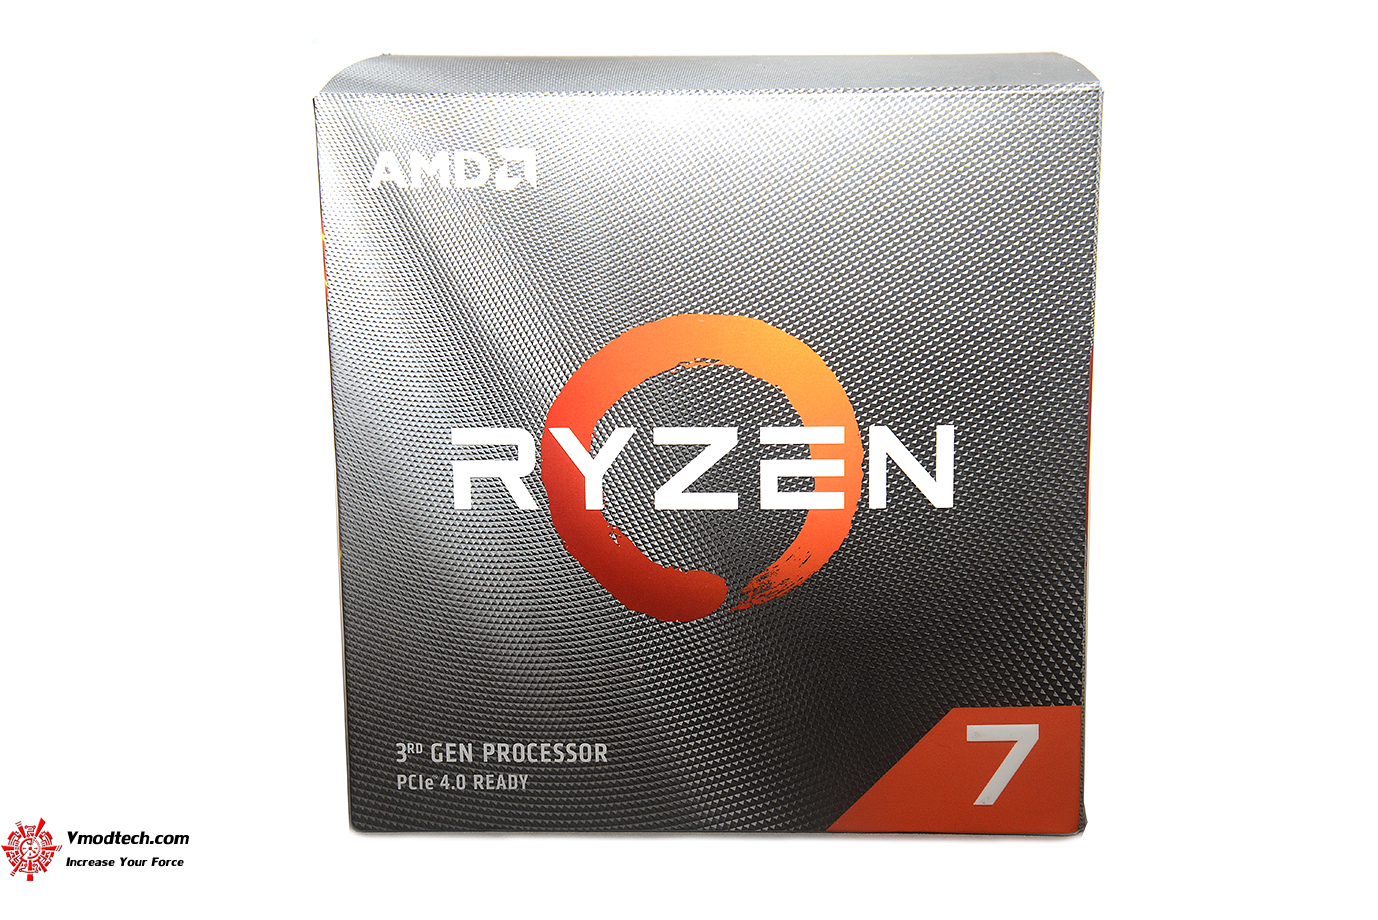 หน้าที่ 1 - AMD RYZEN 7 3700X PROCESSOR REVIEW | Vmodtech.com | Review